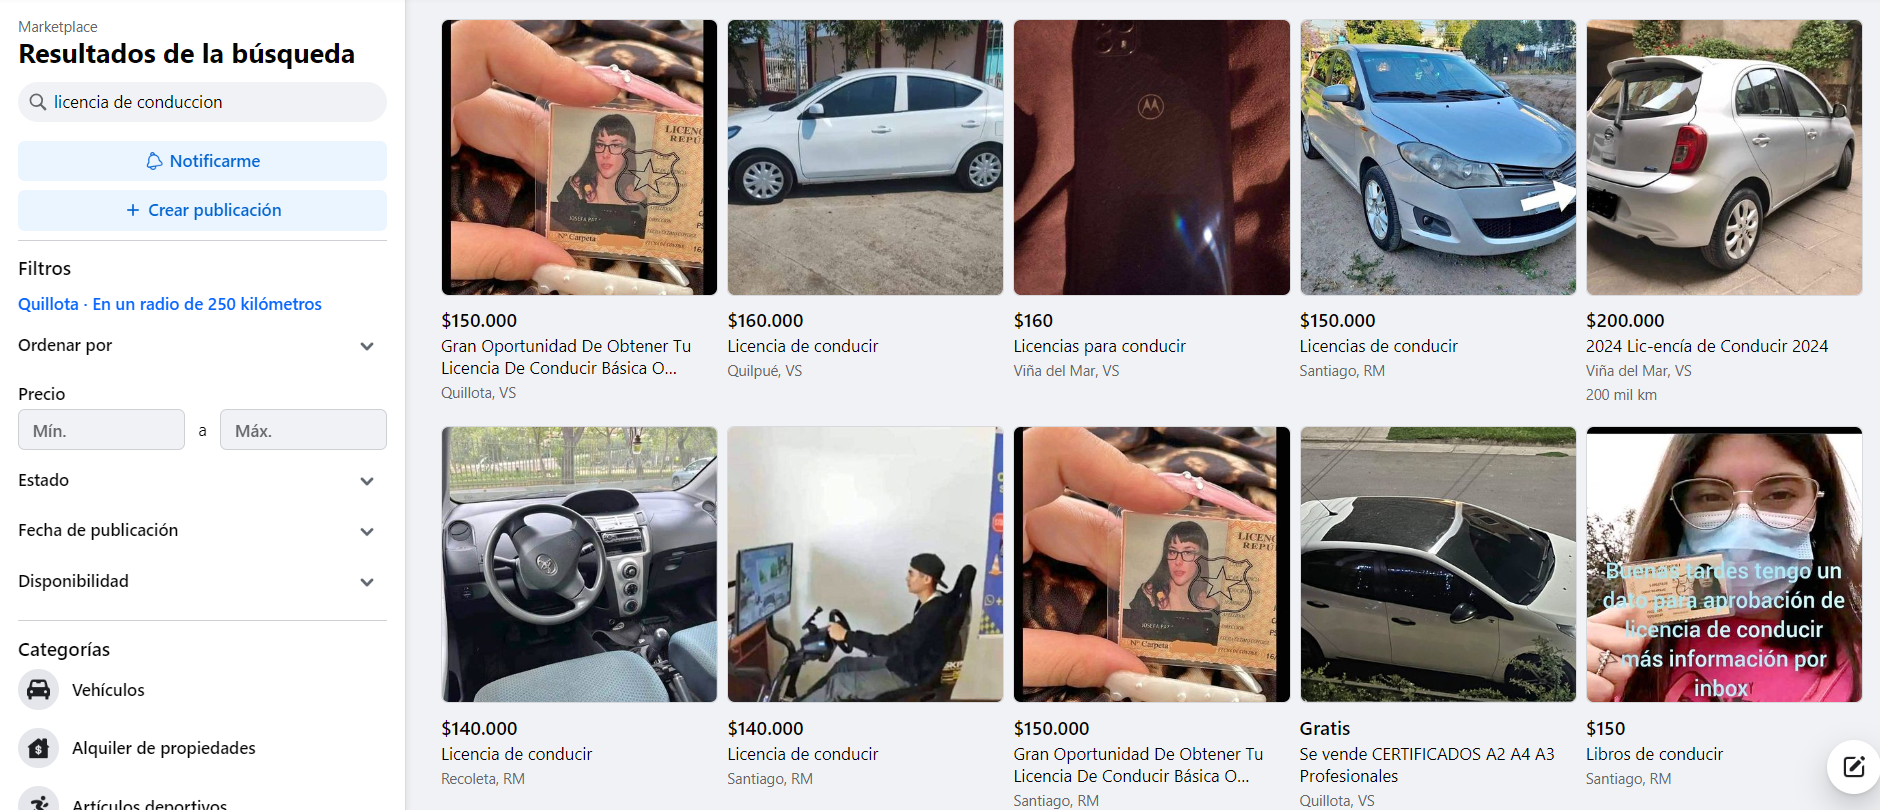 Posible estafa: ofrecen y venden supuestas licencias de conducir en Facebook